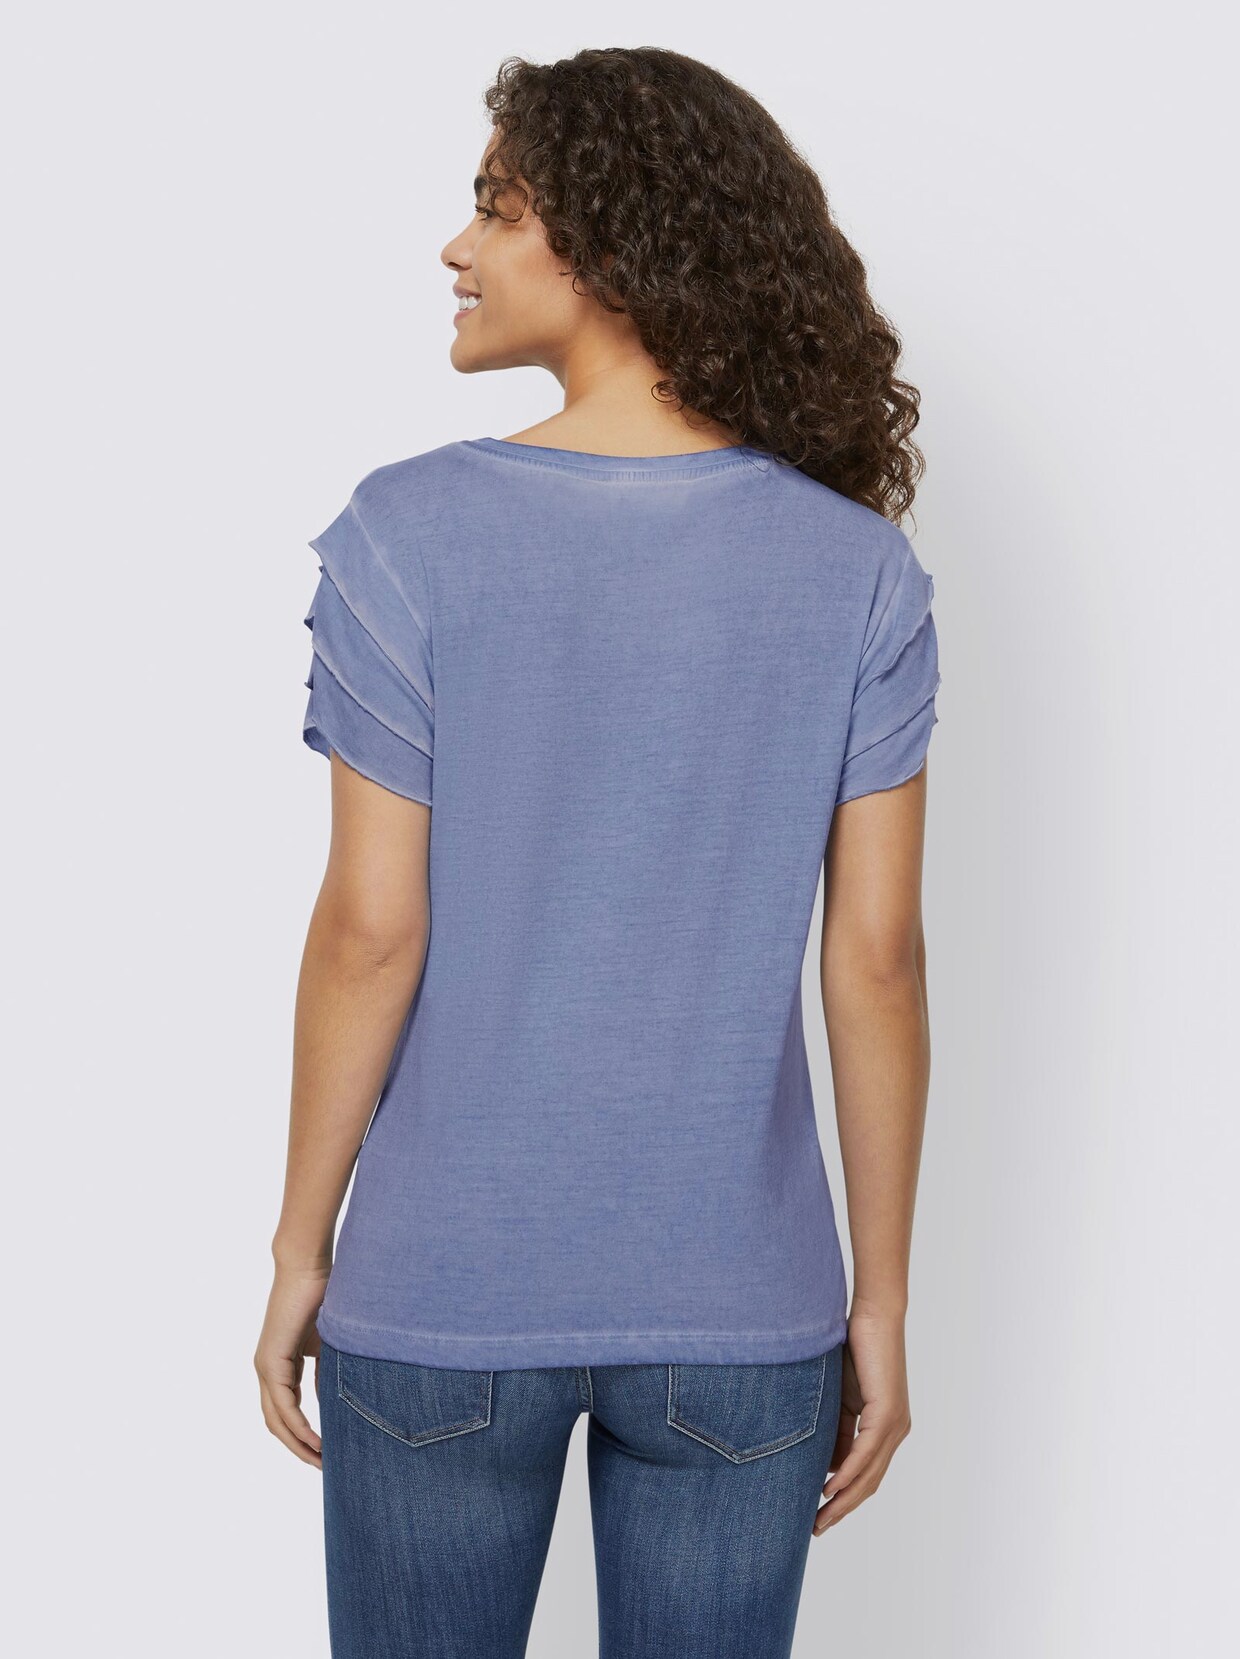 Linea Tesini Shirt - himmelblau